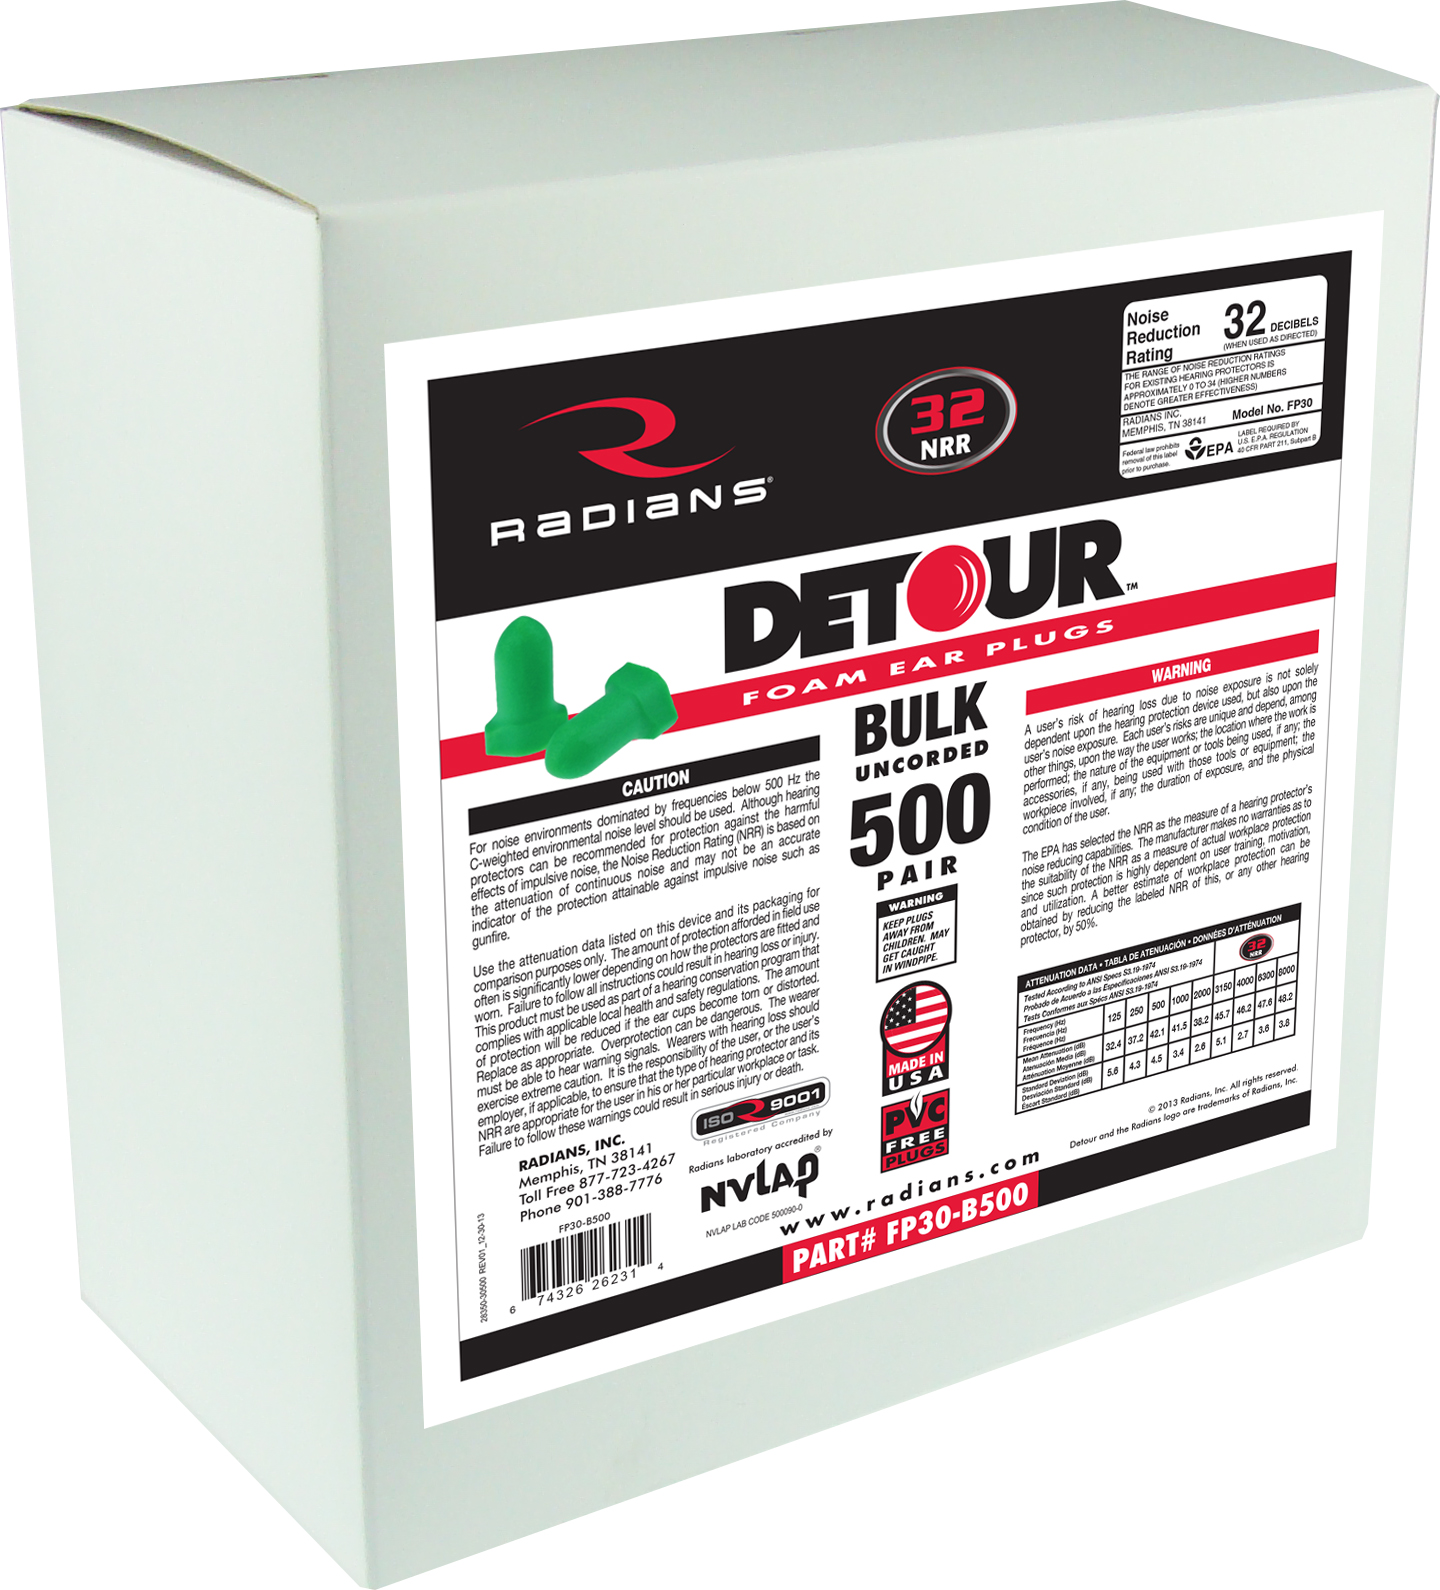 Detour® Foam Uncorded Earplug Dispenser Refill - 500 Pair